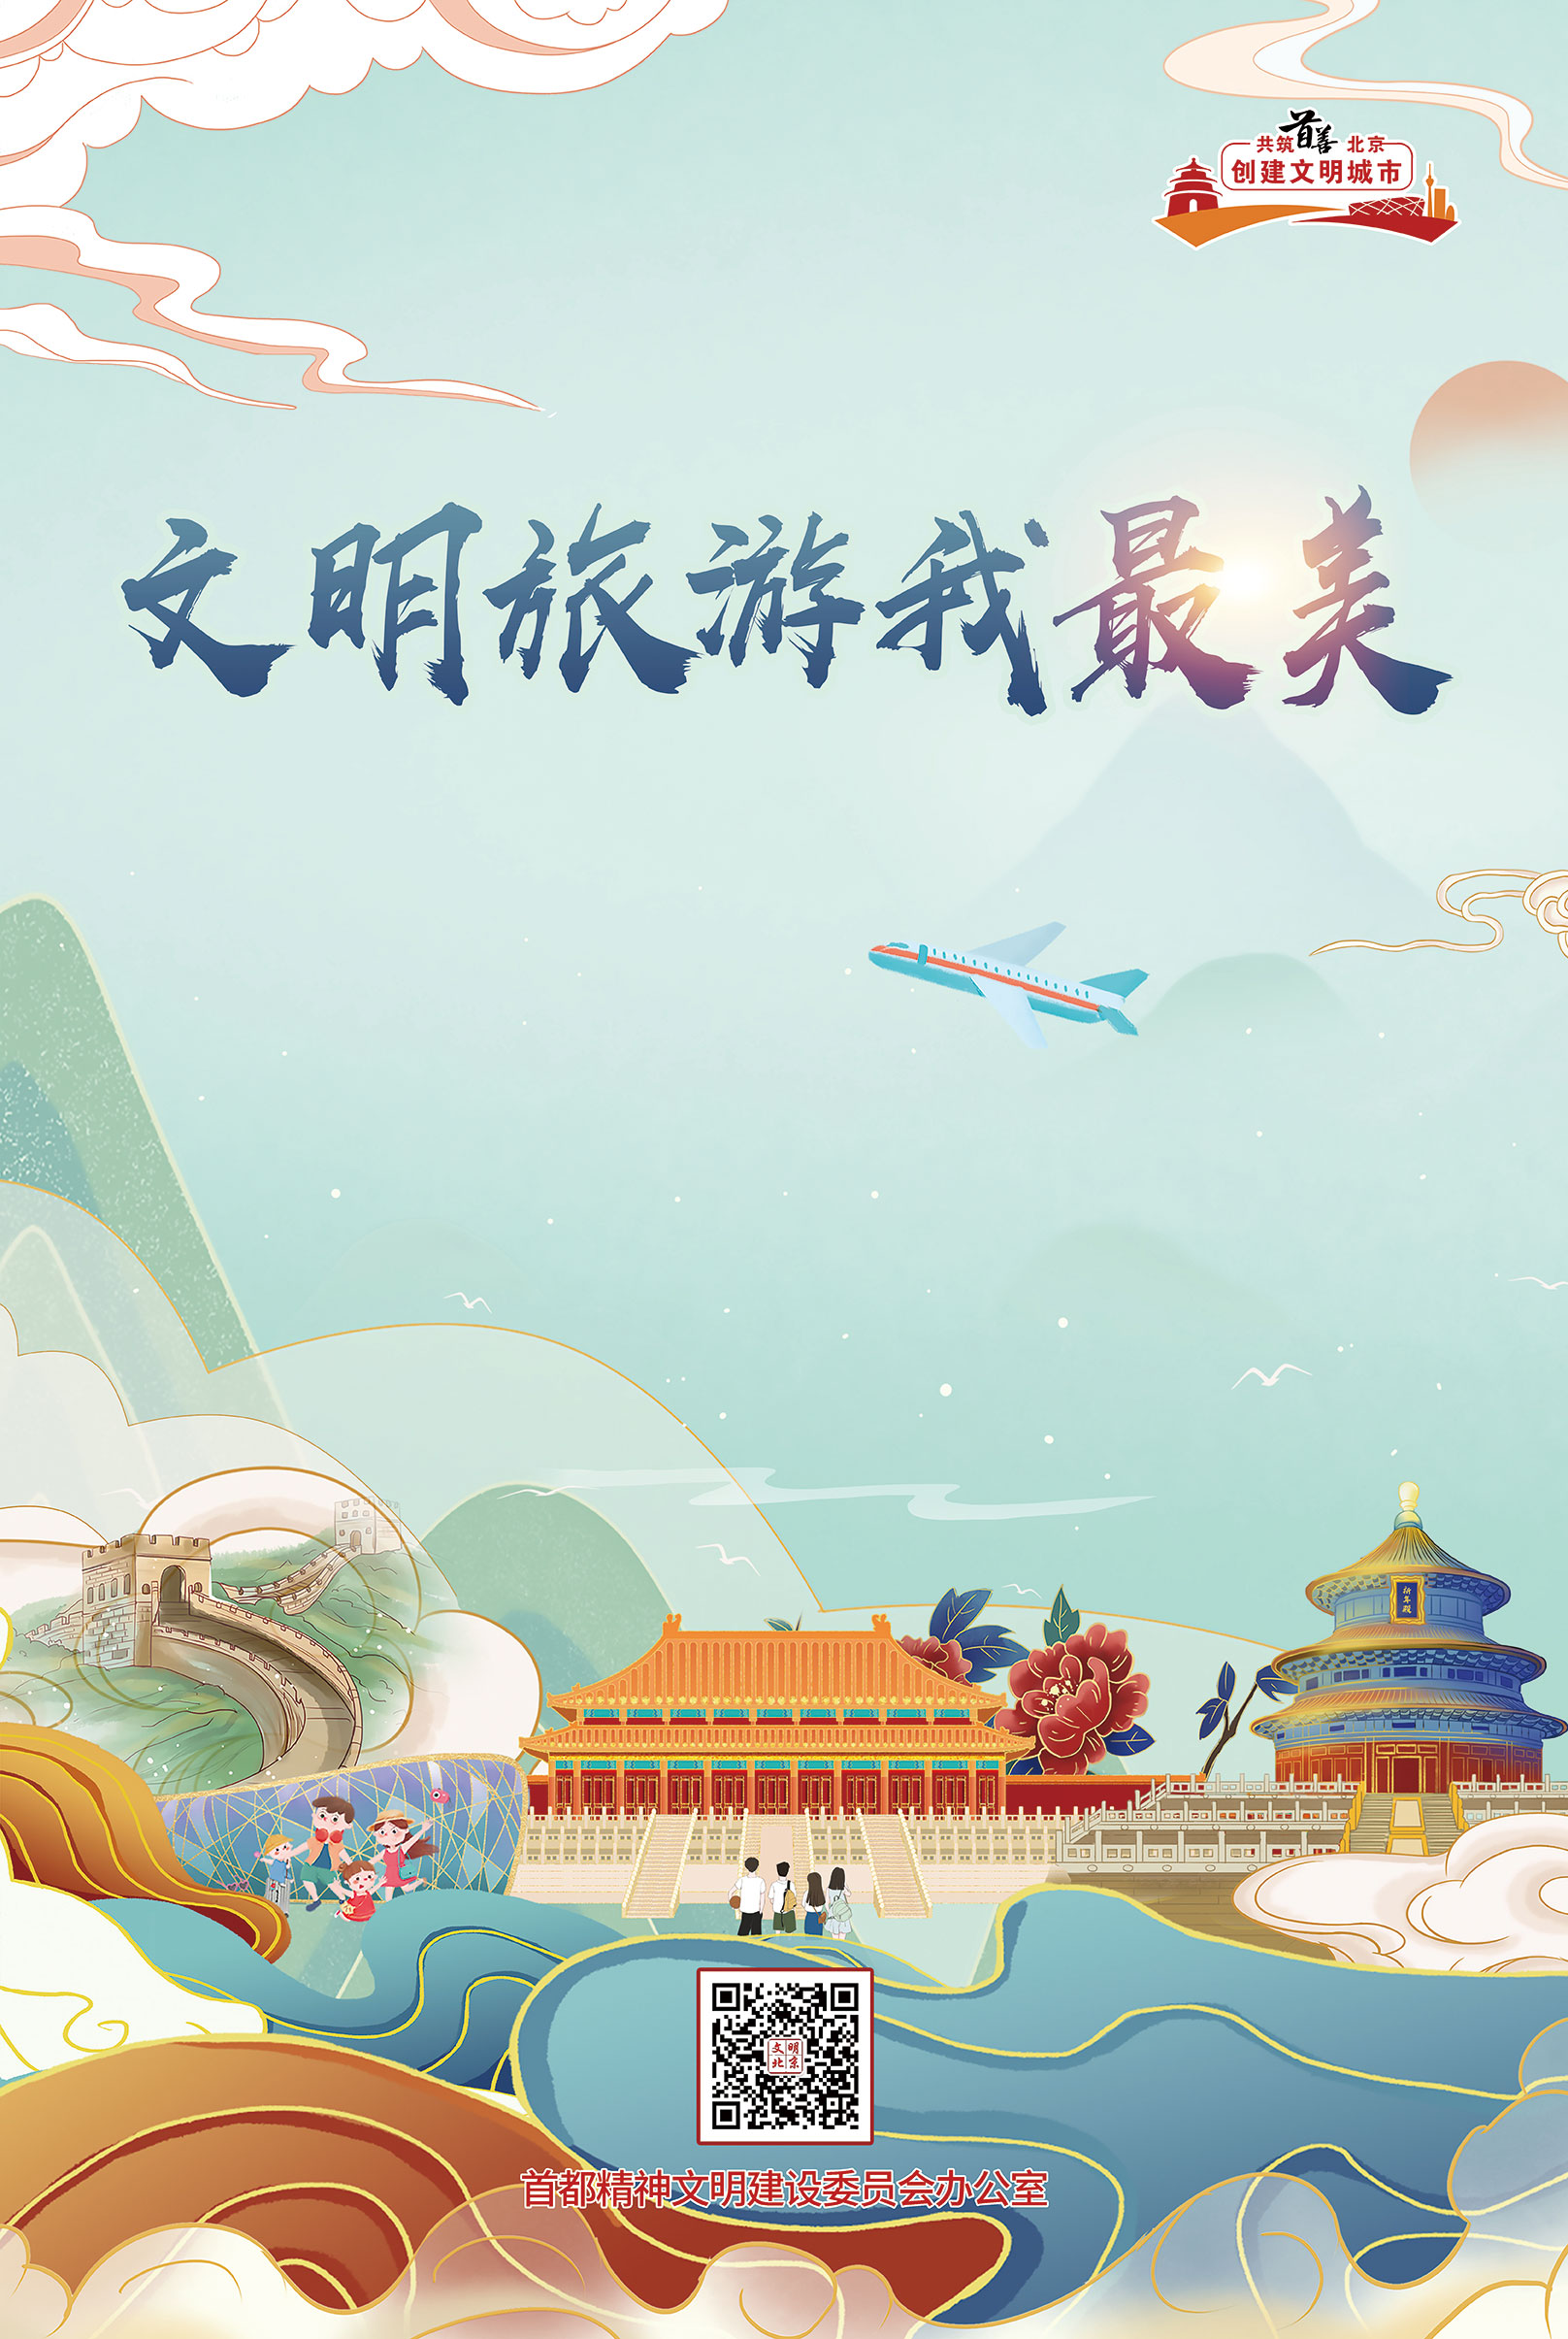 “文明旅游”主题海报